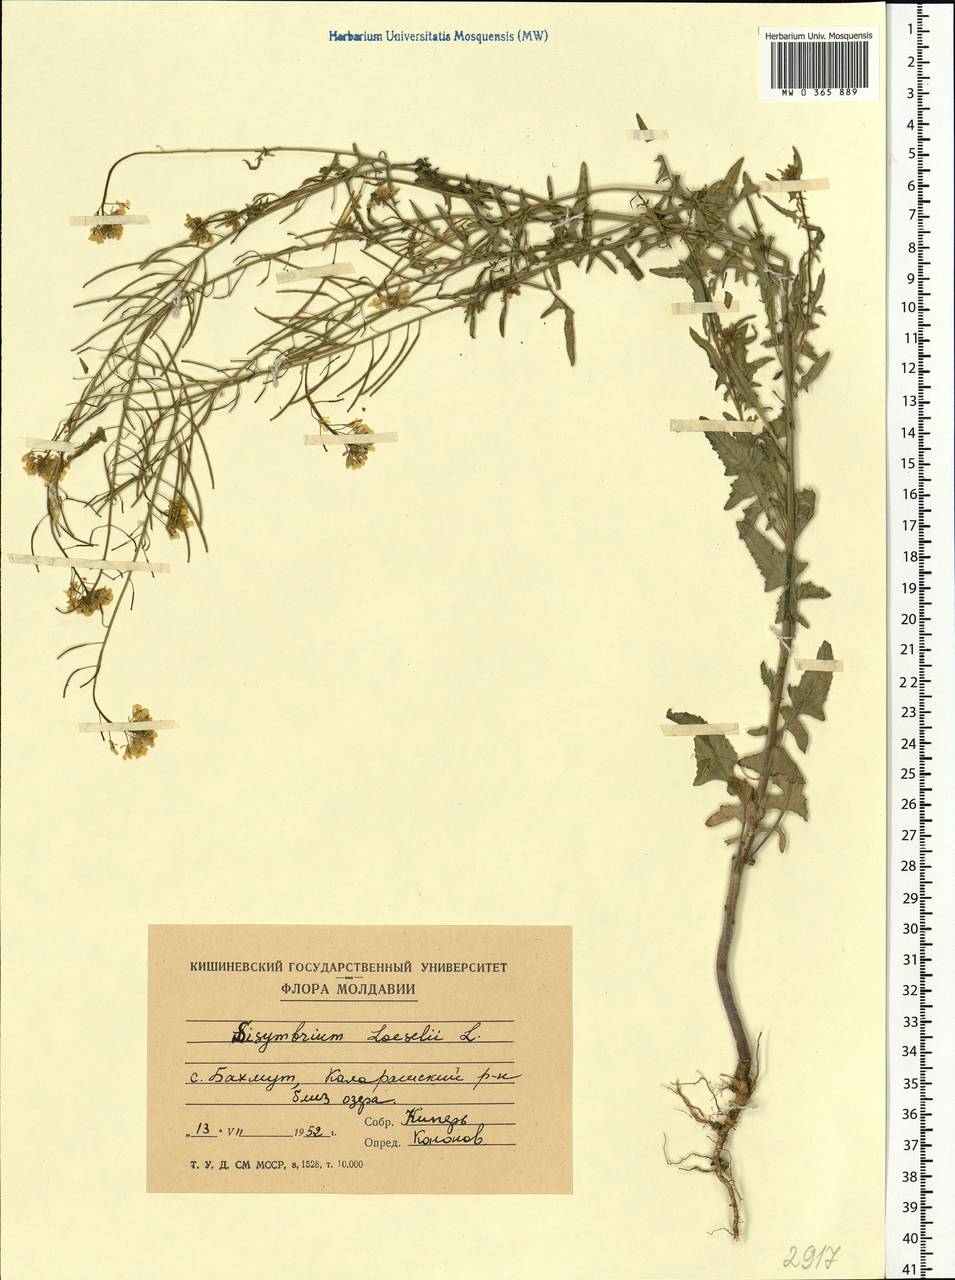 Sisymbrium loeselii L., Eastern Europe, Moldova (E13a) (Moldova)